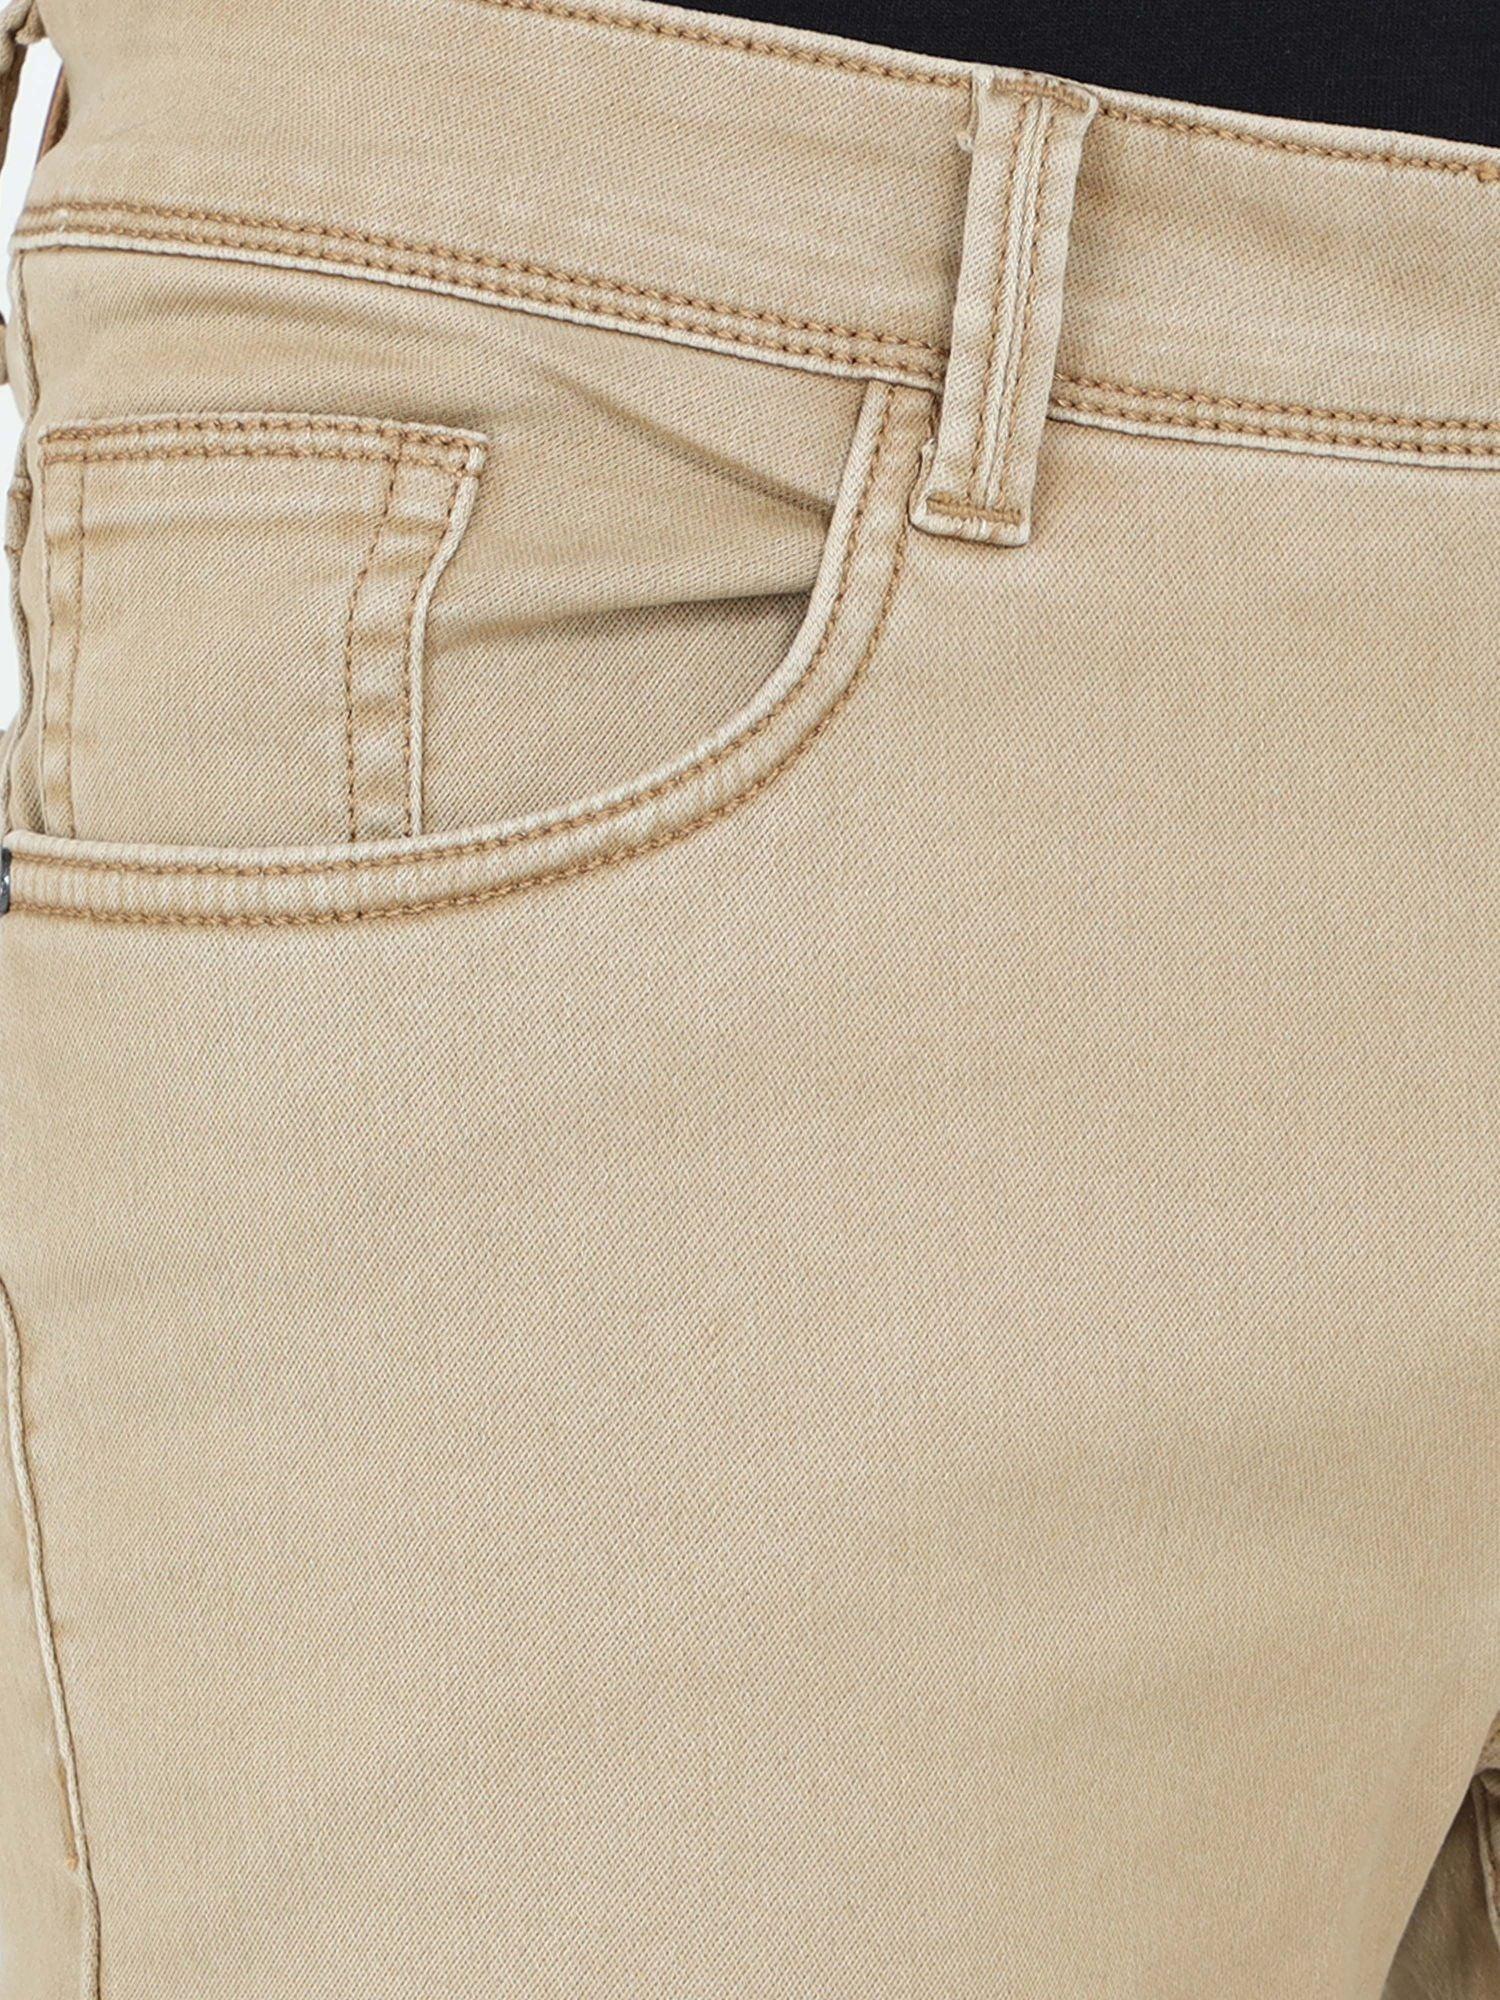 Men's Slim Fit Jeans - Light Khaki